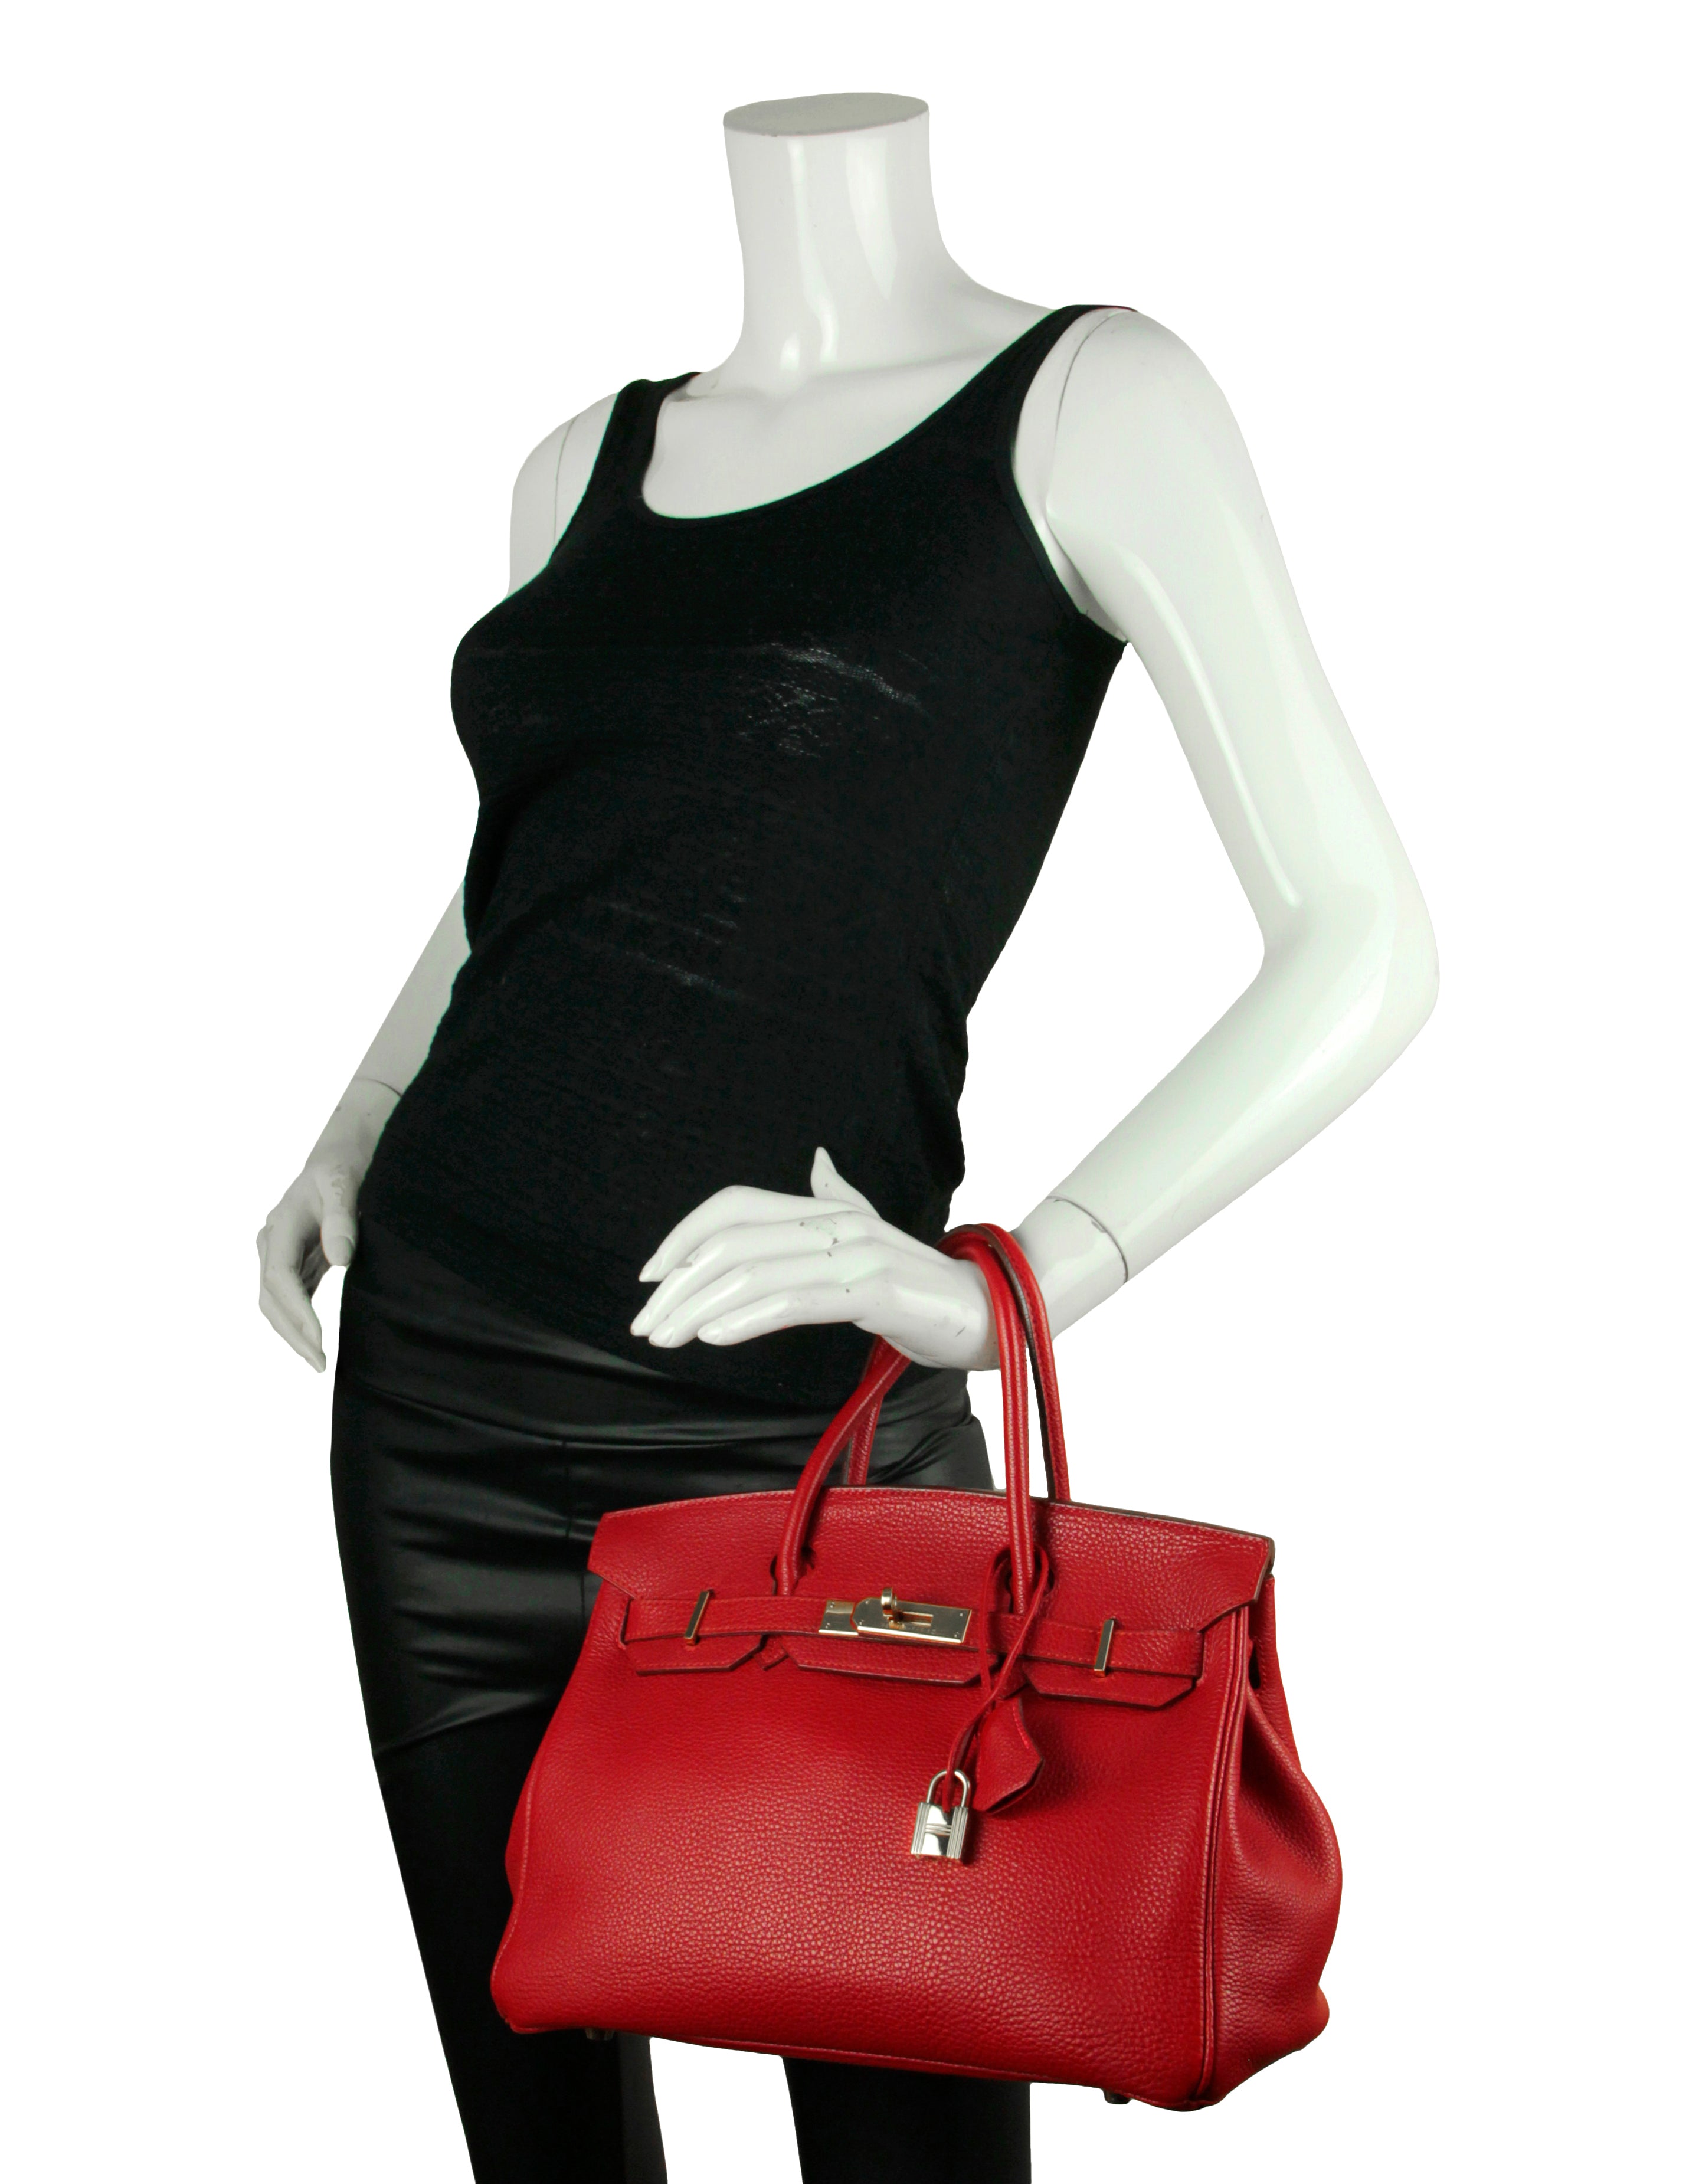 Hermes Rouge Vif Red Togo Leather 30cm Birkin Bag GHW